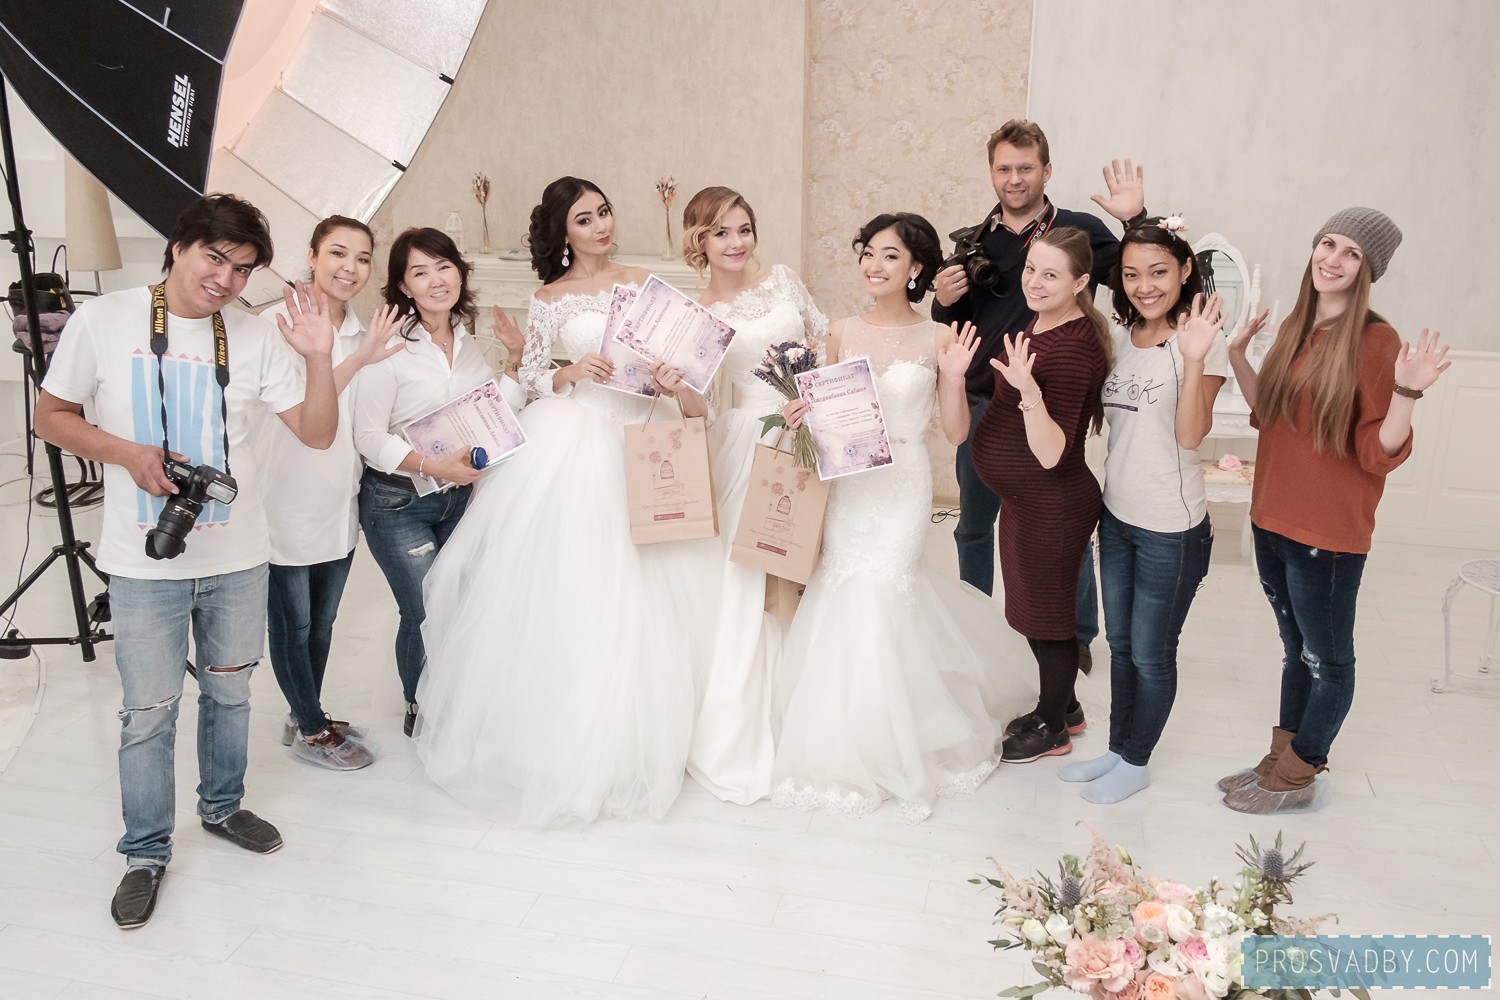 Команда профессионалов, которая сделала невест в этот день счастливыми!